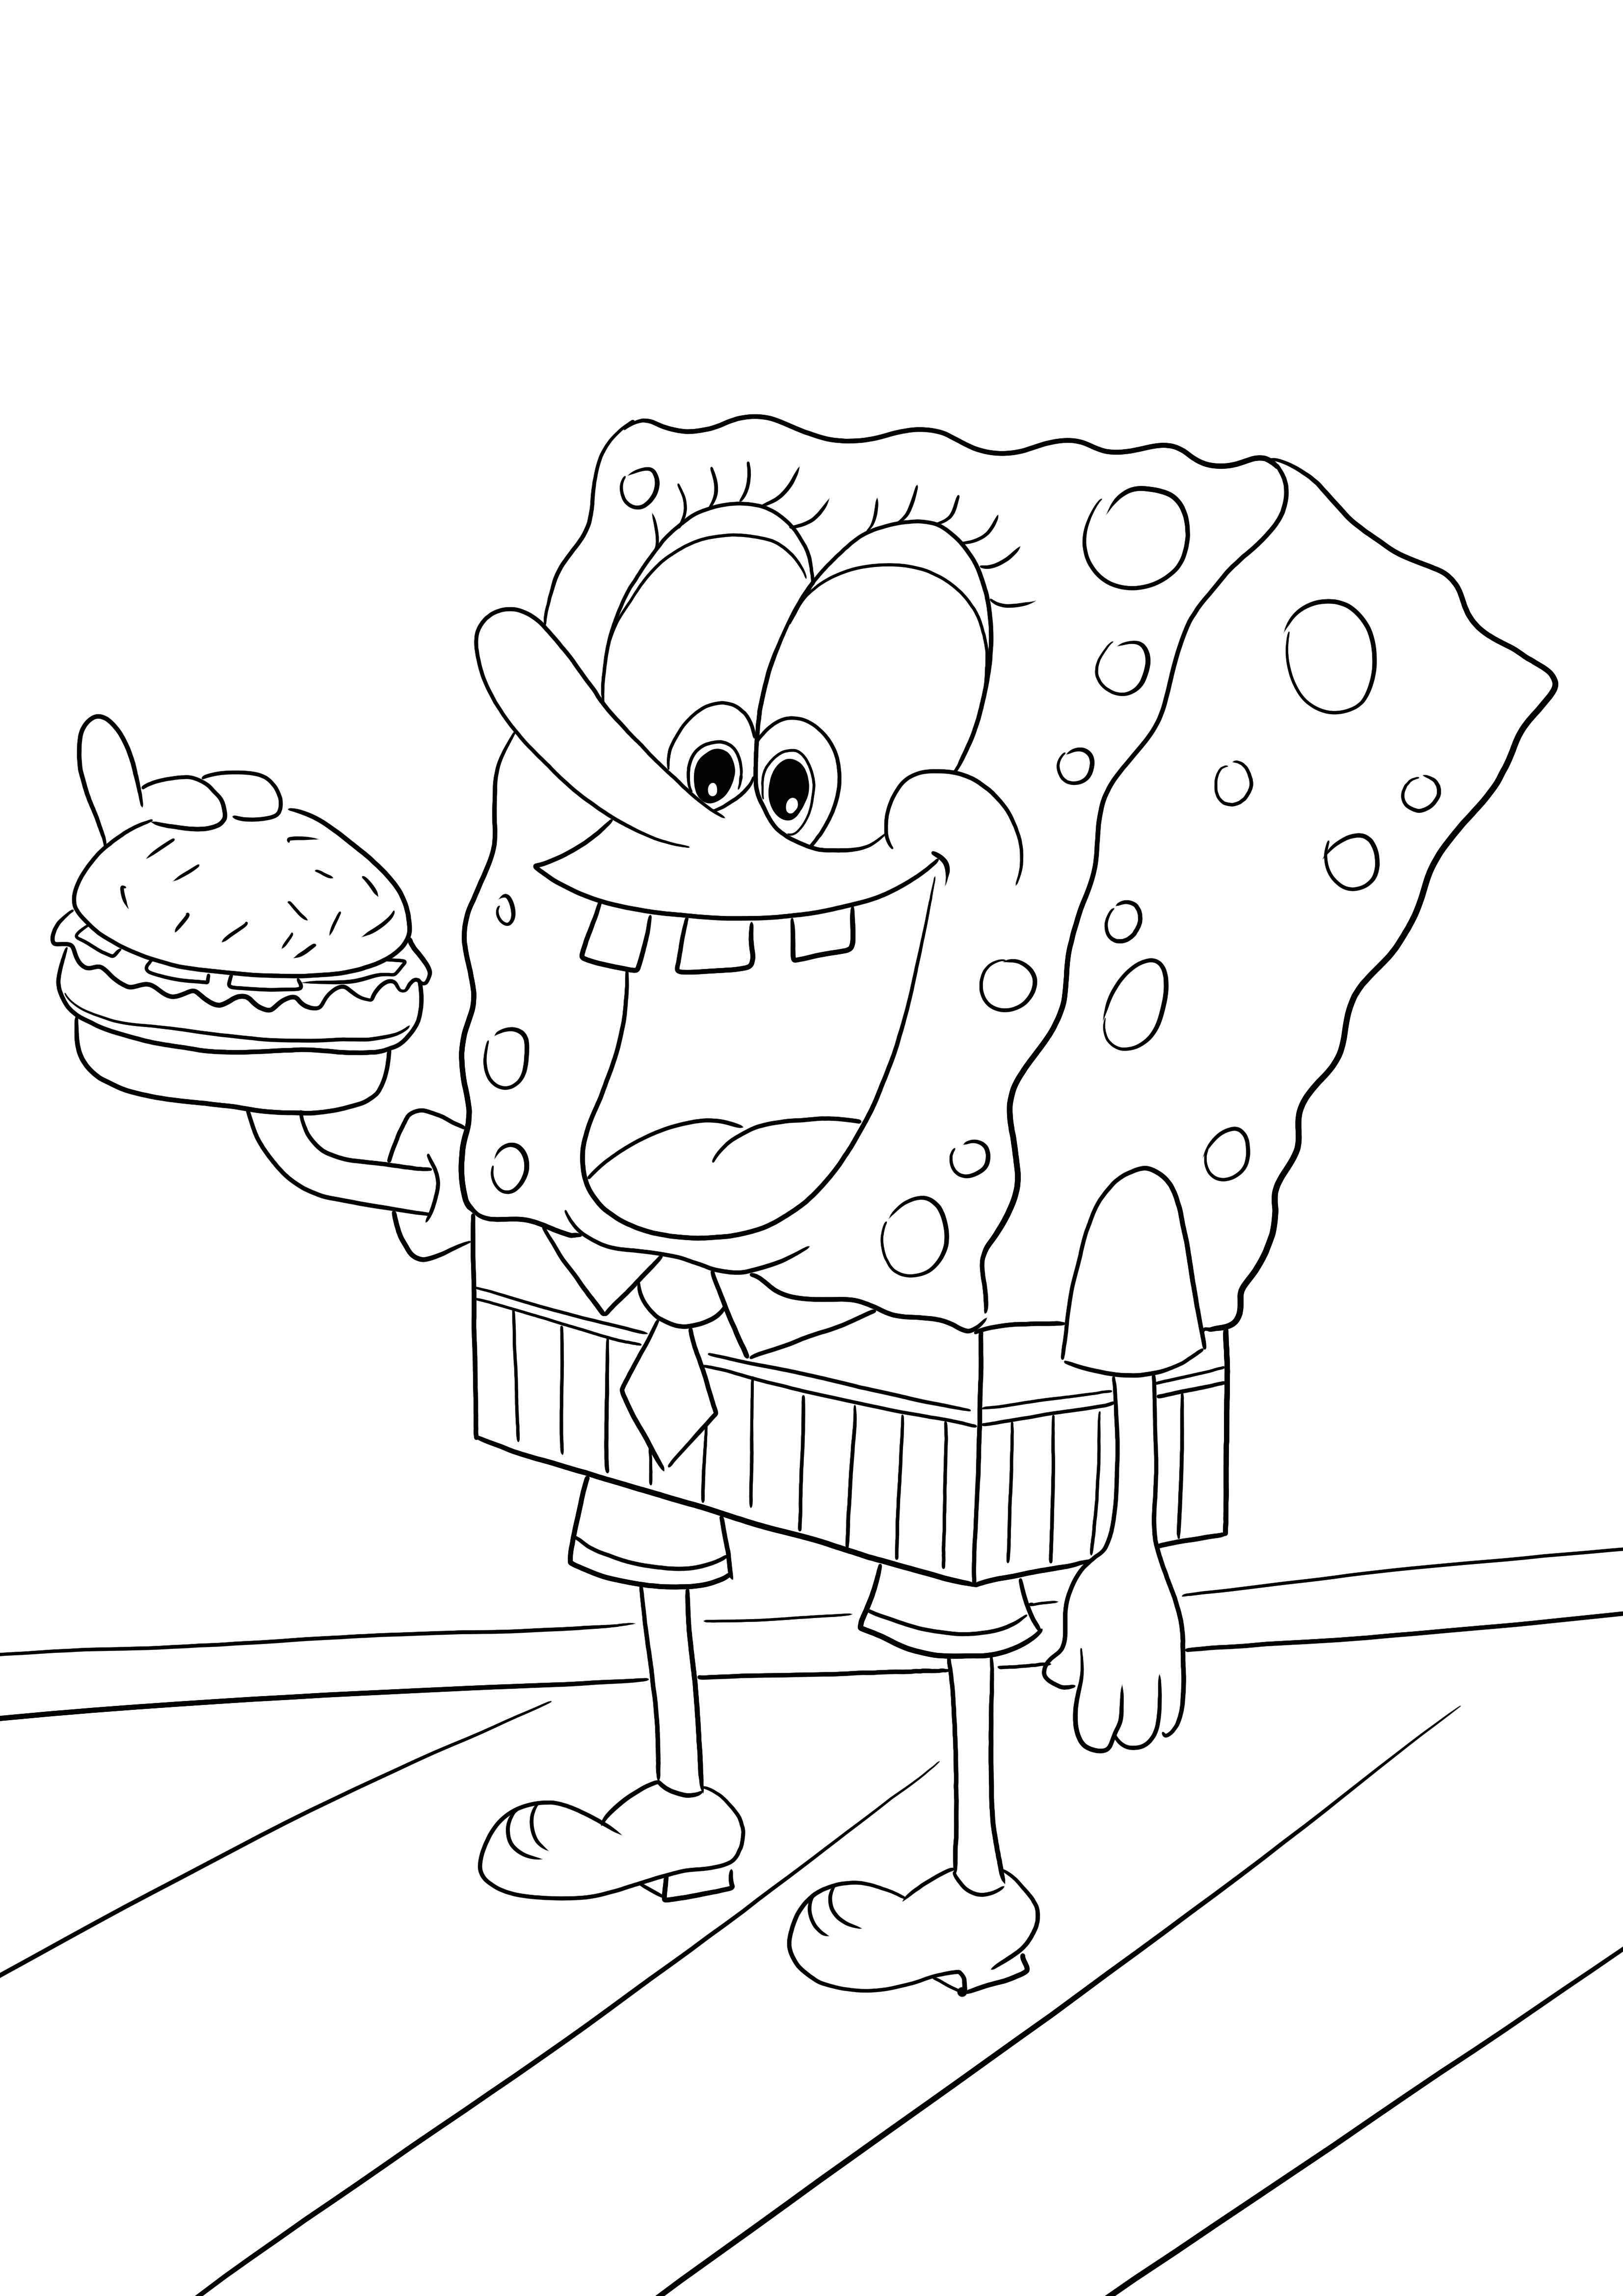 Sünger Bob hamburger yiyor ücretsiz sayfa indirmek ve renklendirmek için